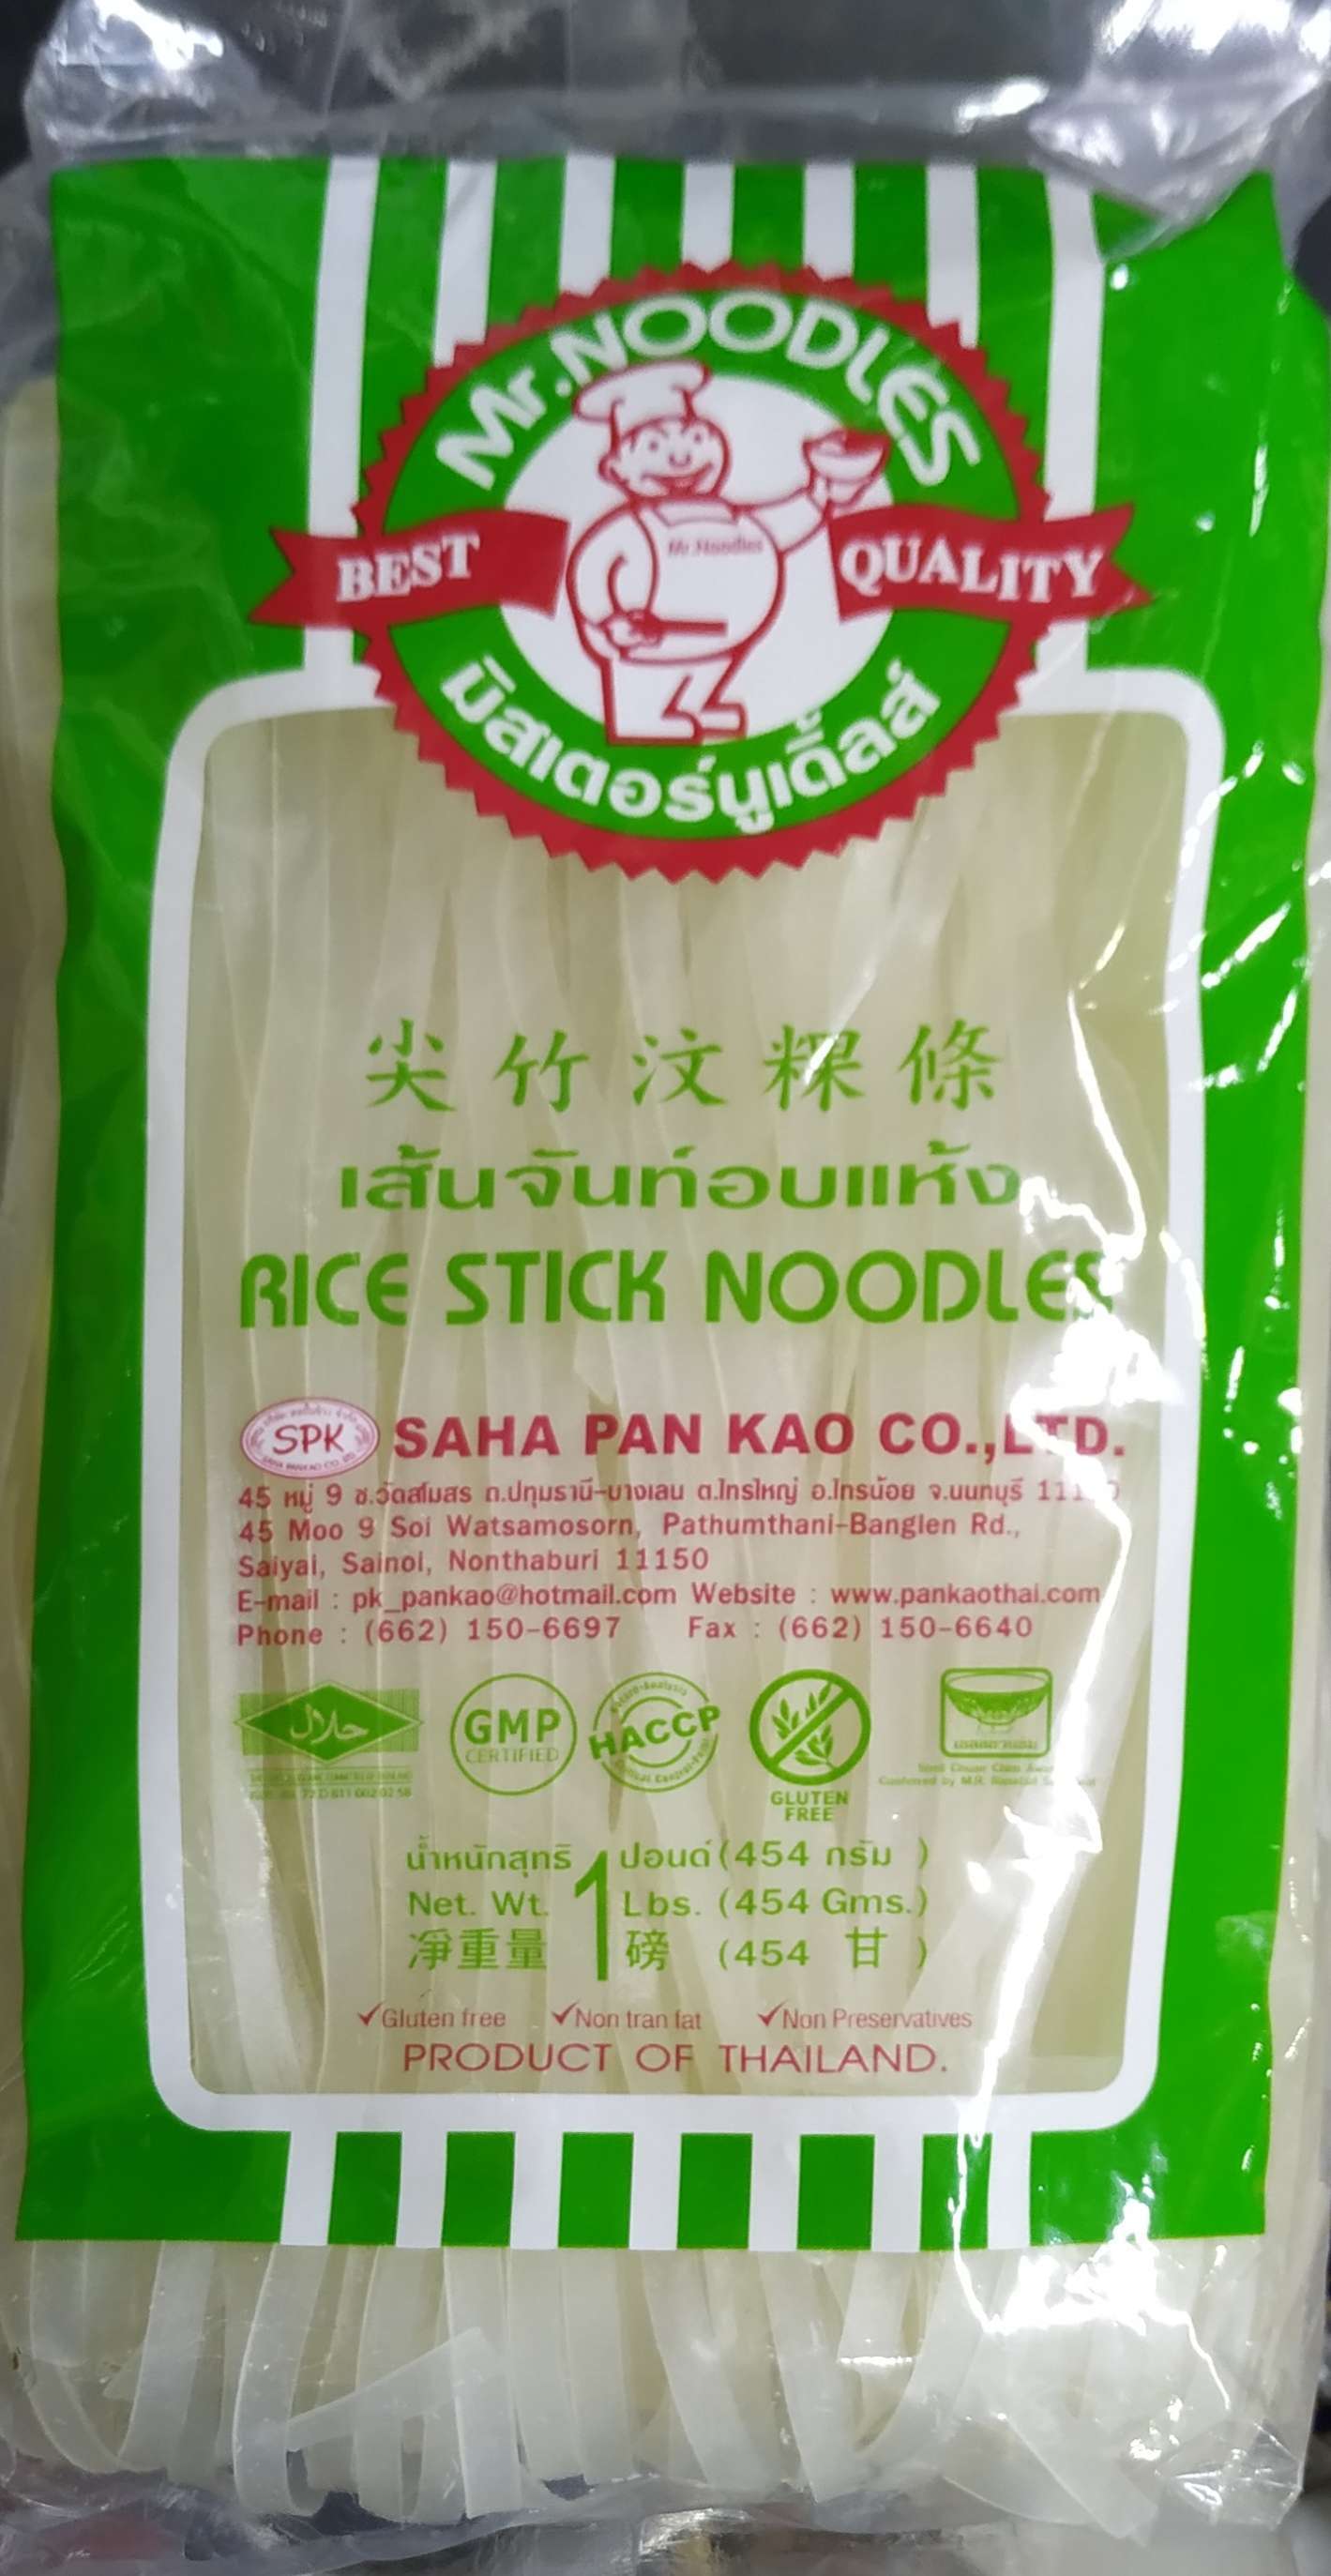 Rice Stick Noodles (Saha Pan Kao, Thailand) 454g